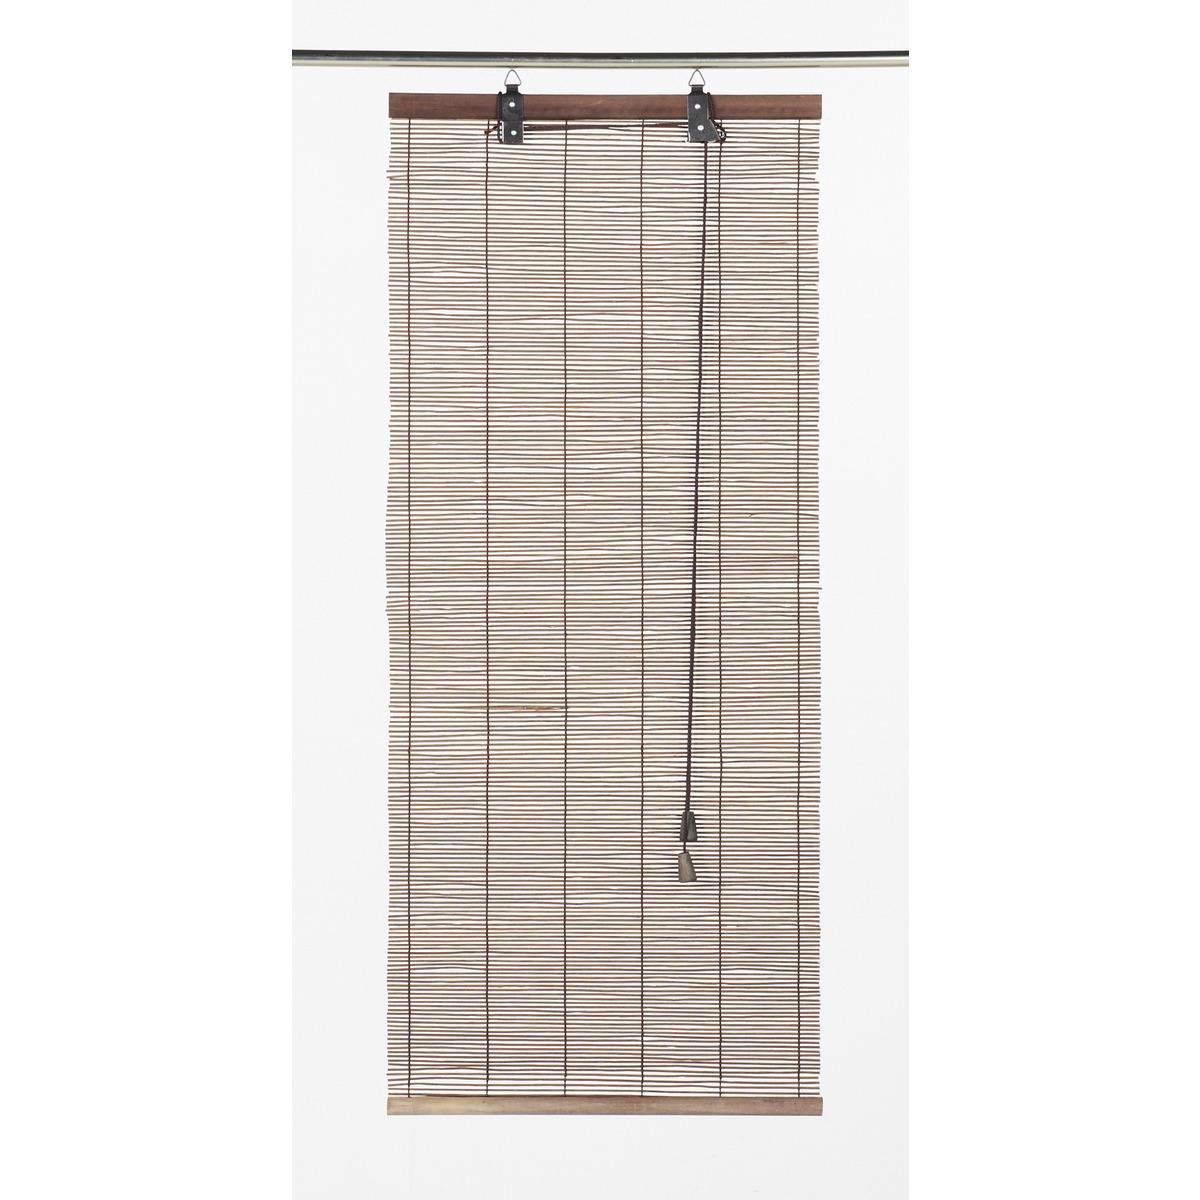 Store enrouleur en bambou - 40 x 90 cm - Marron